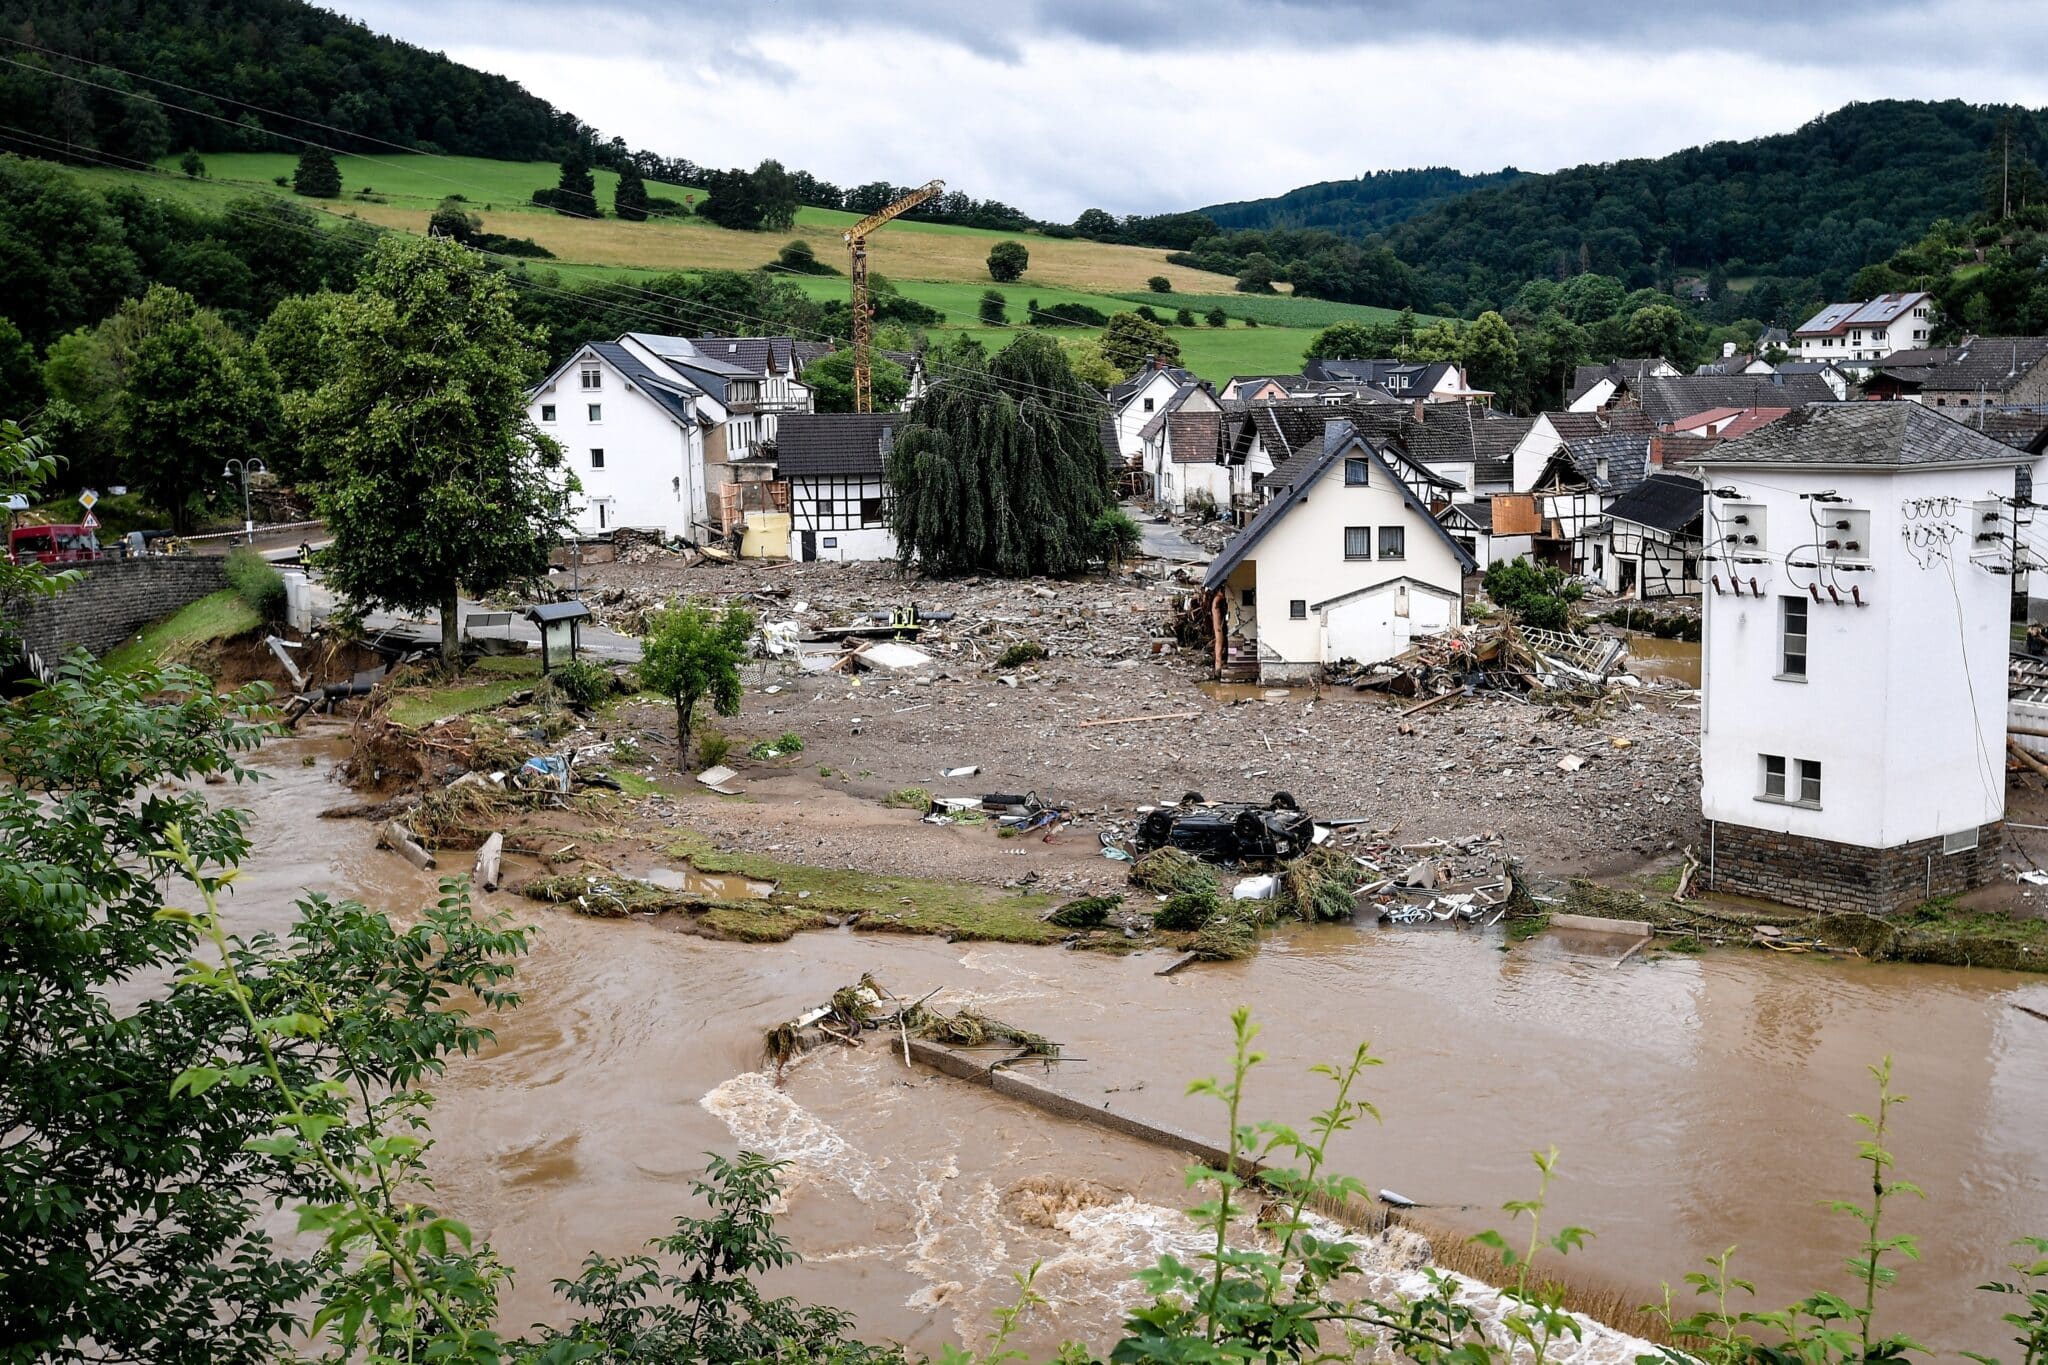 Tragedia en Alemania: al menos 133 muertos y más de 1.000 desaparecidos por las inundaciones